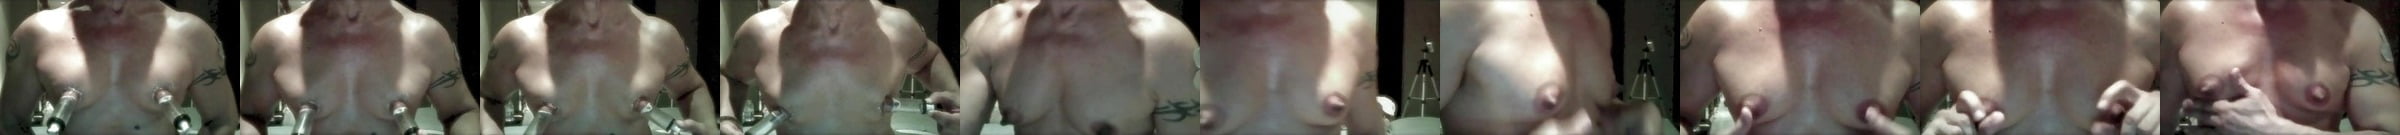 Male Nipple Enlargement Free Gay Porn Video 95 Xhamster